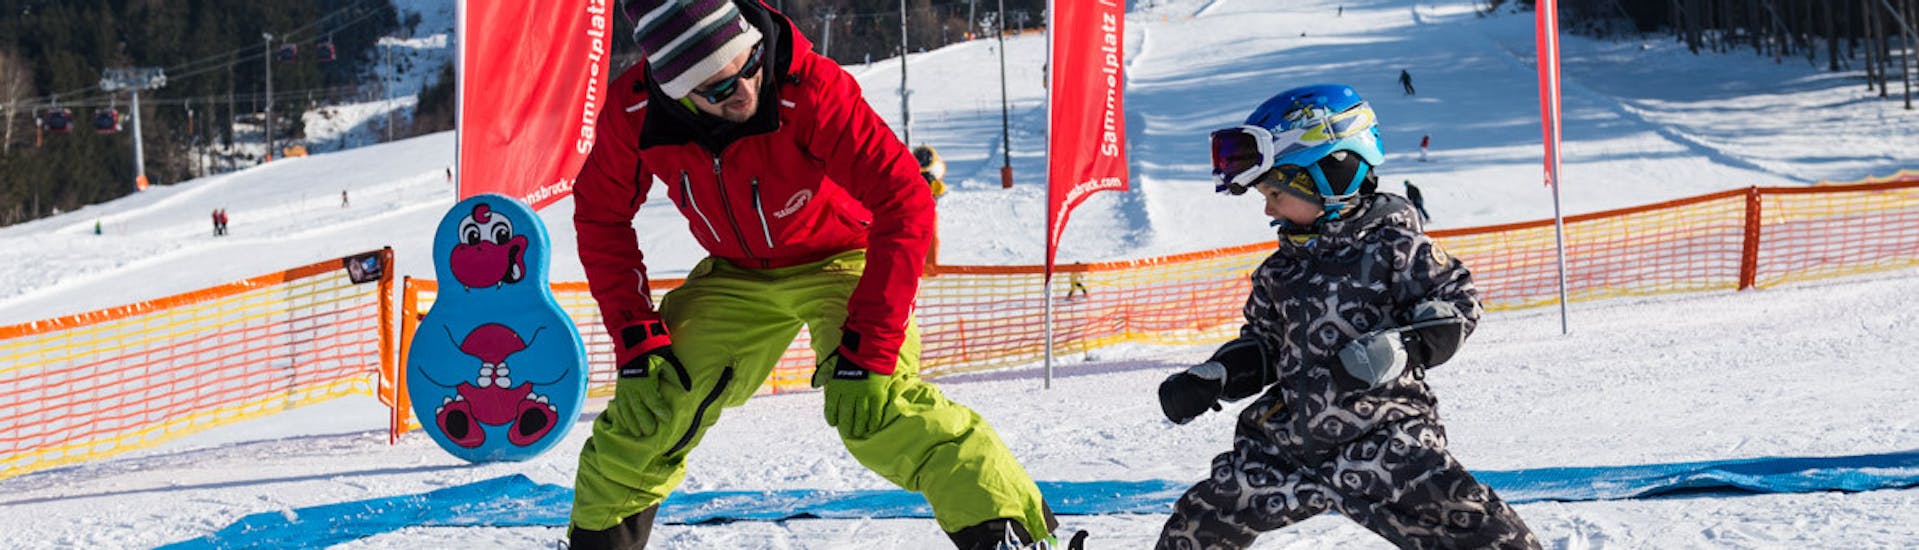 Clases particulares de esquí para niños con experiencia con Ski- & Snowboardschule Innsbruck.